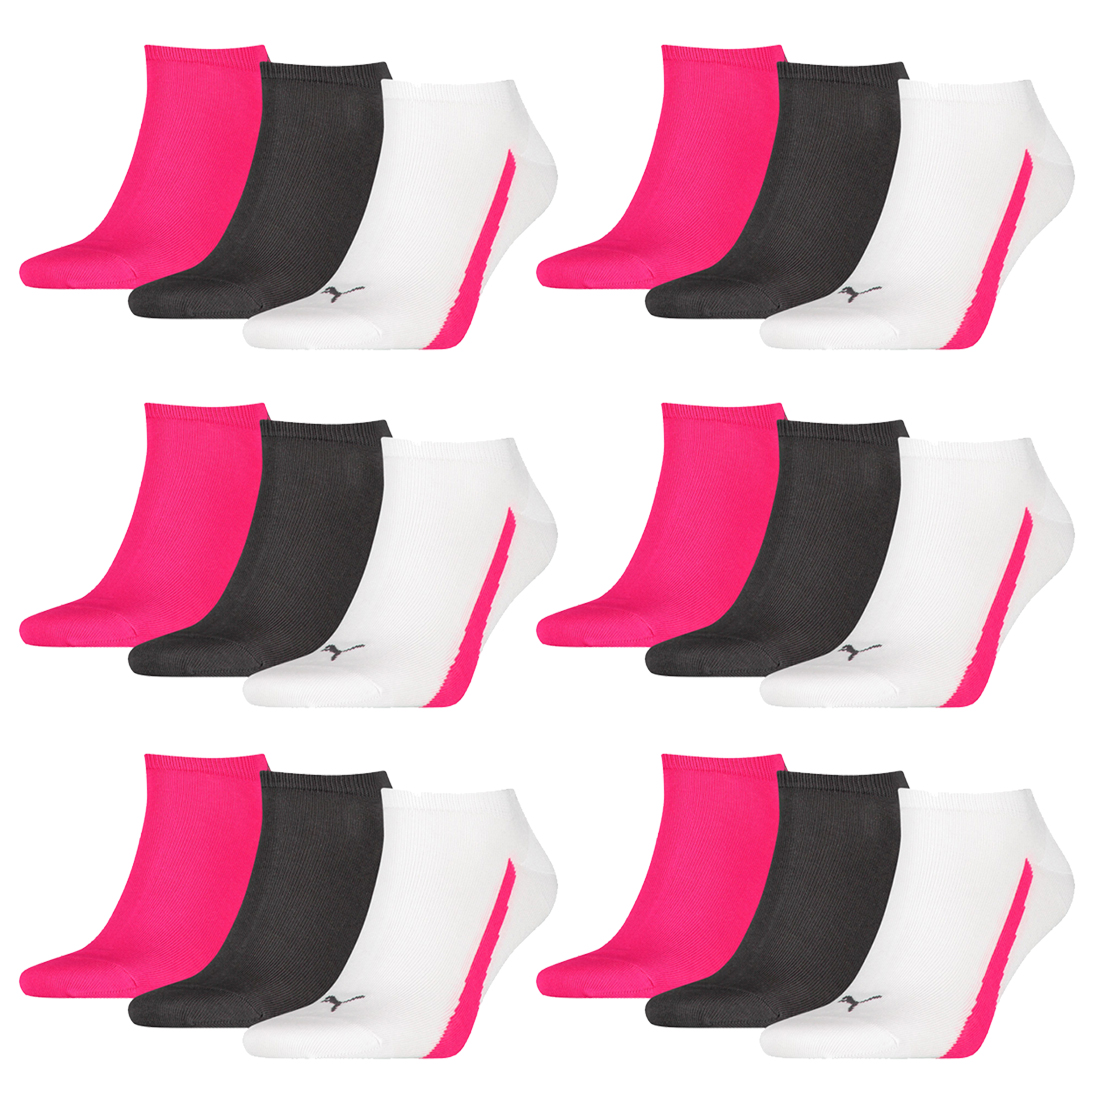 18 Paar Puma Lifestyle Sneaker Socken Gr. 35 - 46 Unisex Kurzsocke Füßlinge